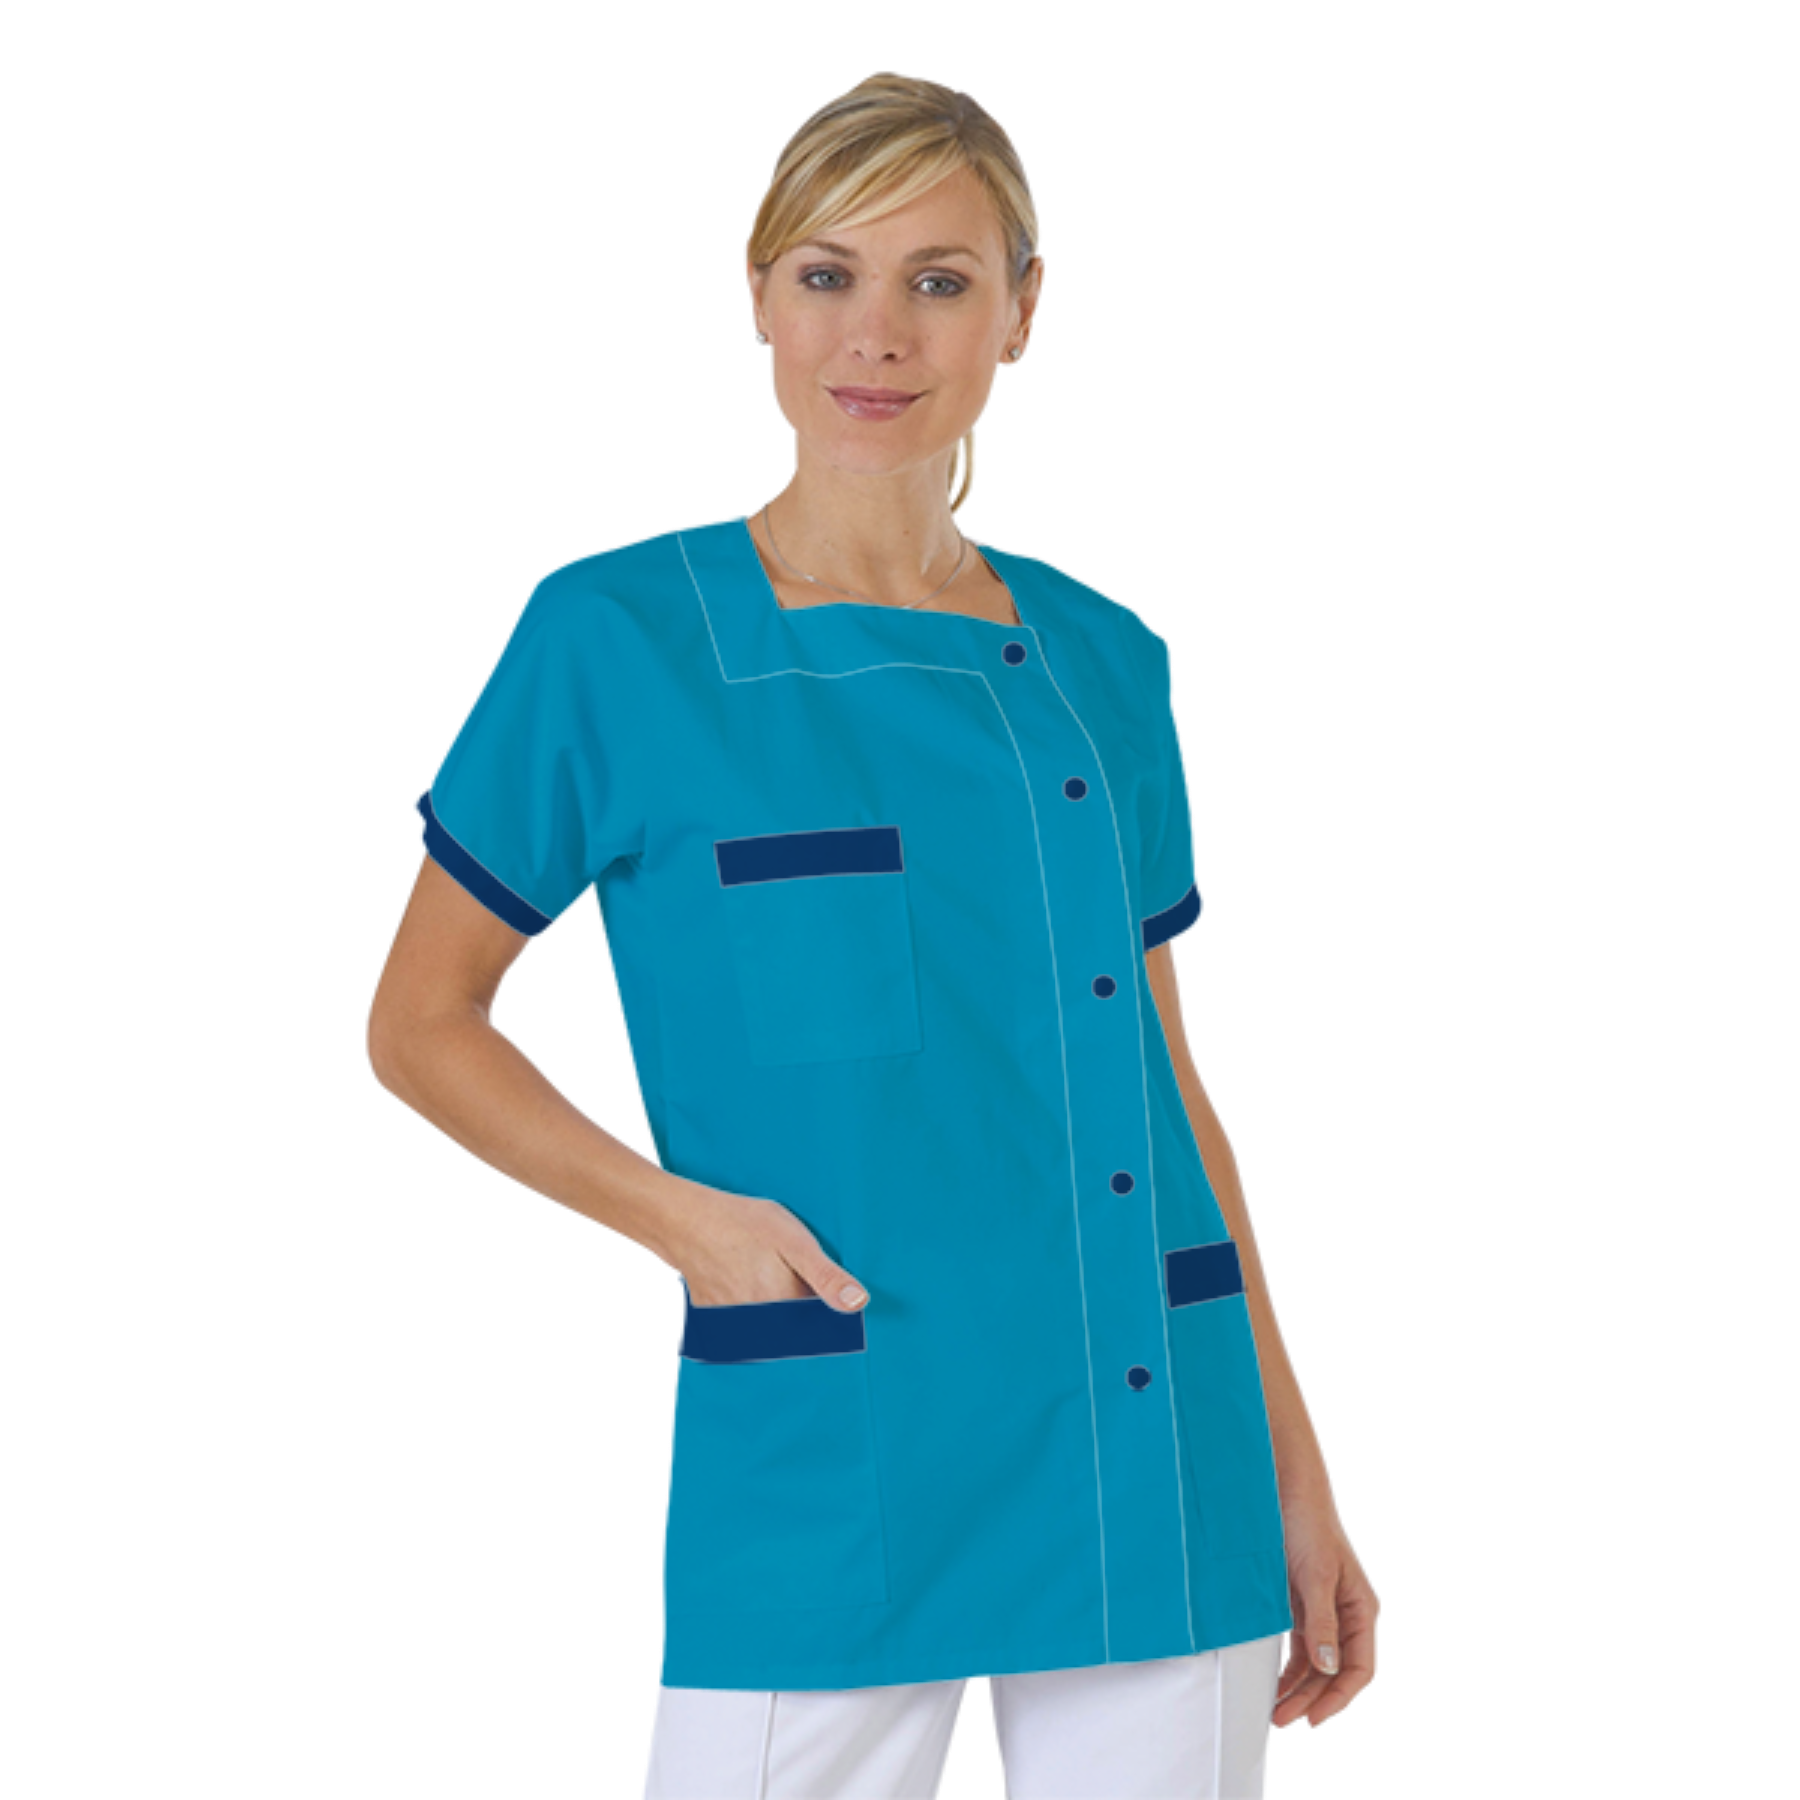 blouse-medicale-col-carre-a-personnaliser acheté - par Emilie - le 01-10-2018